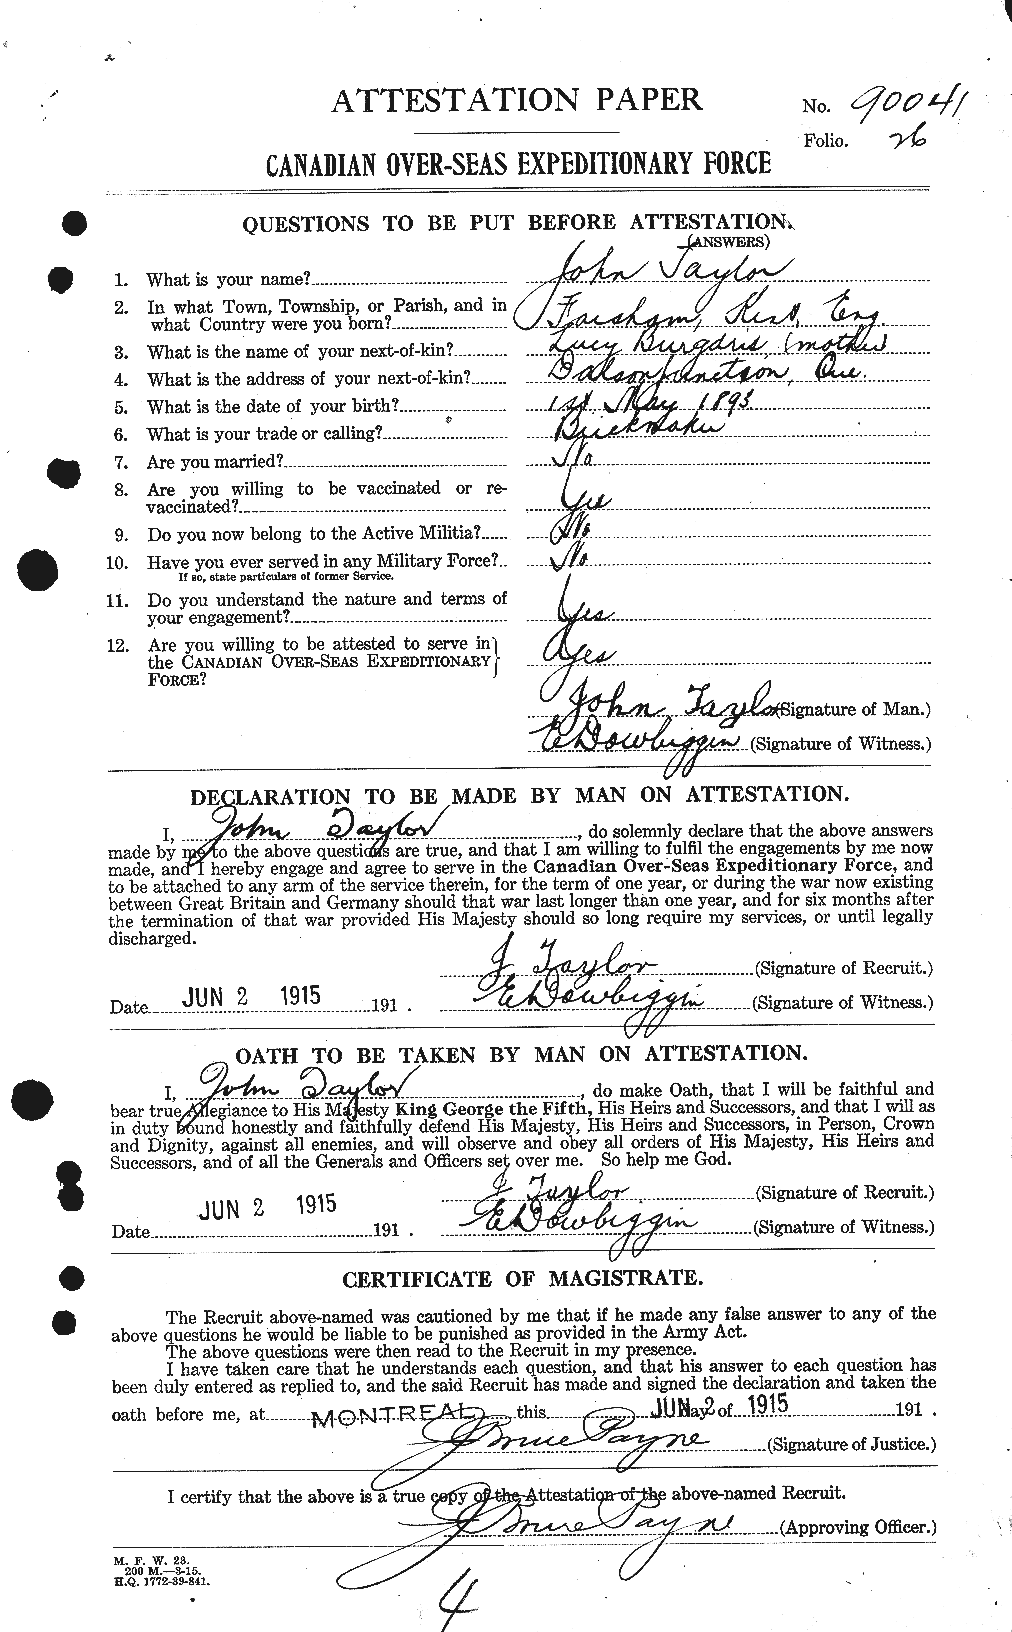 Dossiers du Personnel de la Première Guerre mondiale - CEC 627023a